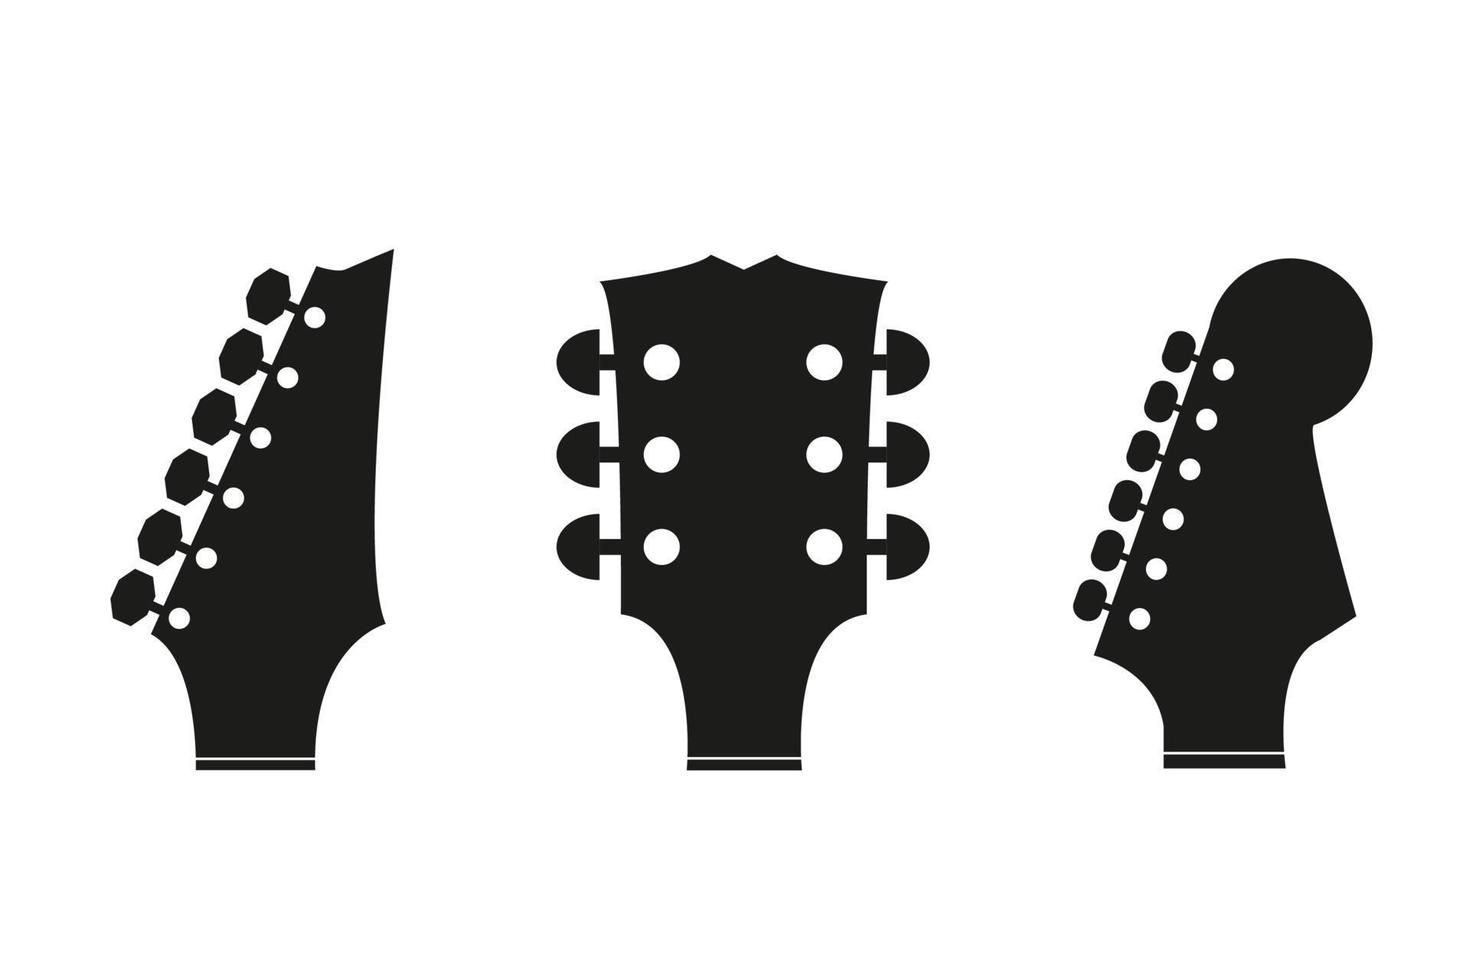 la cabeza de la guitarra negra 3 sobre un fondo blanco vector